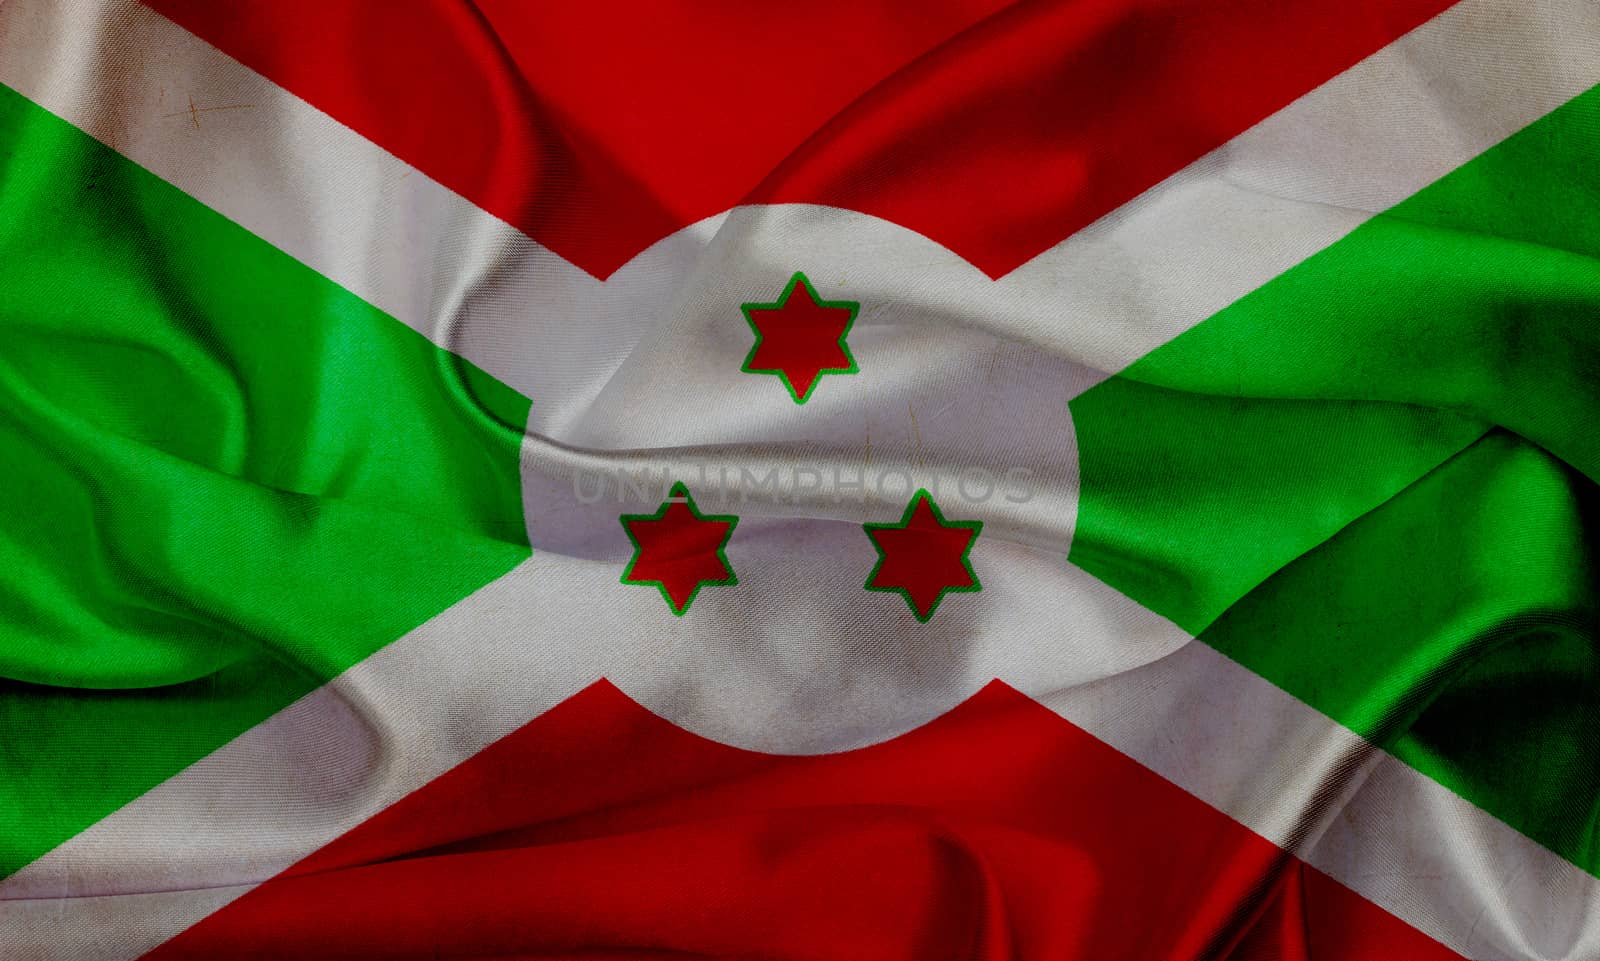 Burundi grunge waving flag by taesmileland